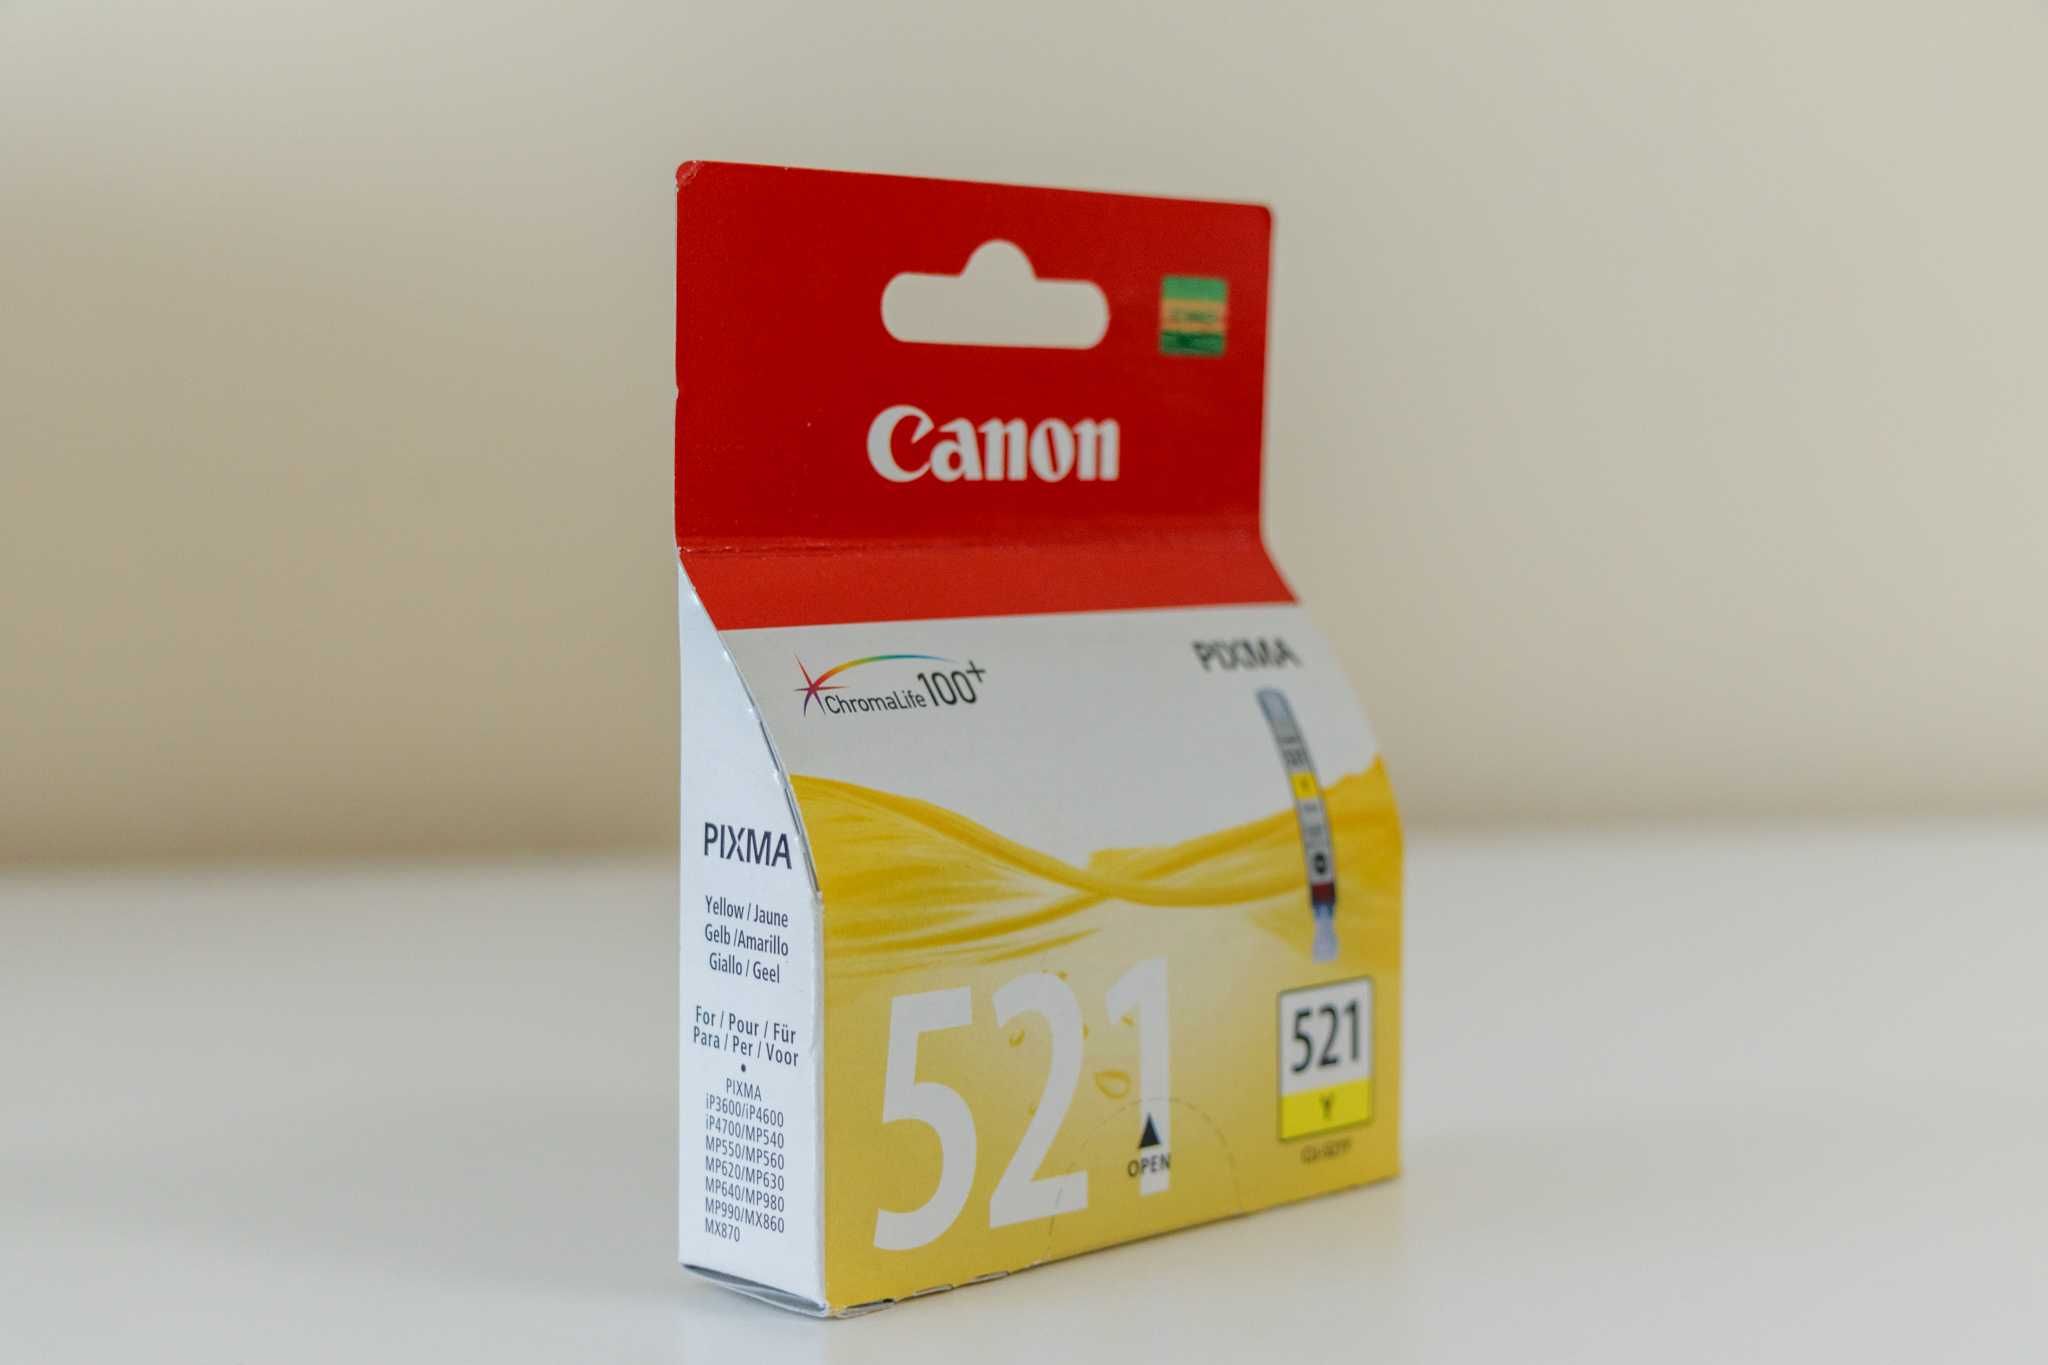 Canon CLI - 521 - PIXMA żółty tusz oryginalny do drukarek (1 sztuka]